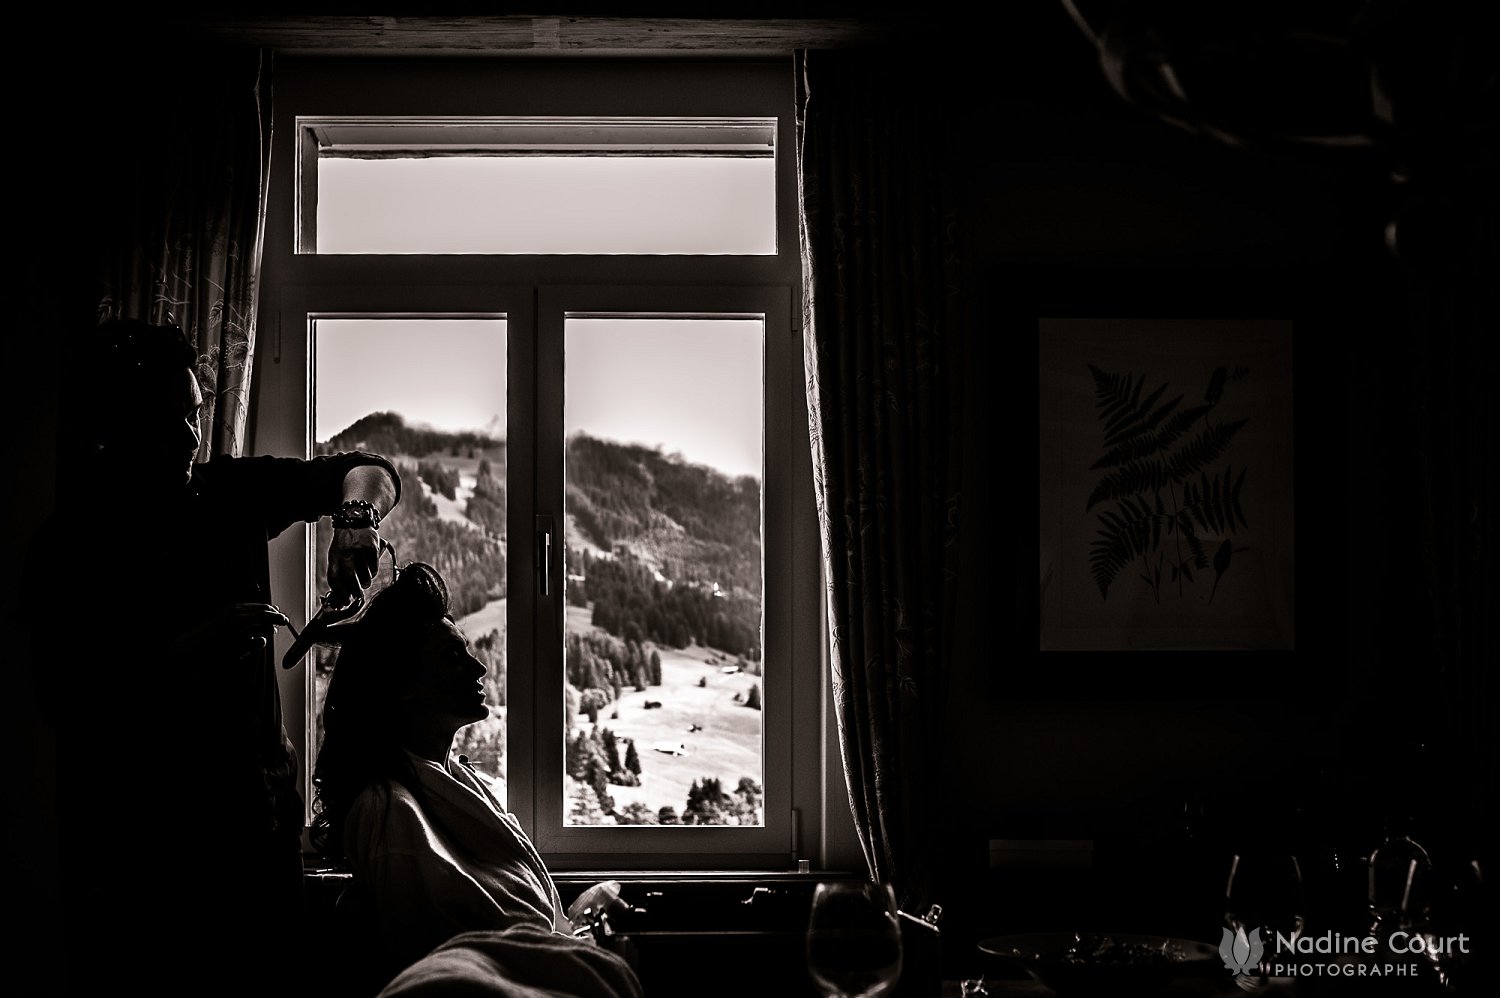 Mariage au Palace de Gstaad - wedding Gstaad Palace - Préparatifs des mariés dans une suite de l'hôtel - Bride & Groom getting ready in hotel's suite